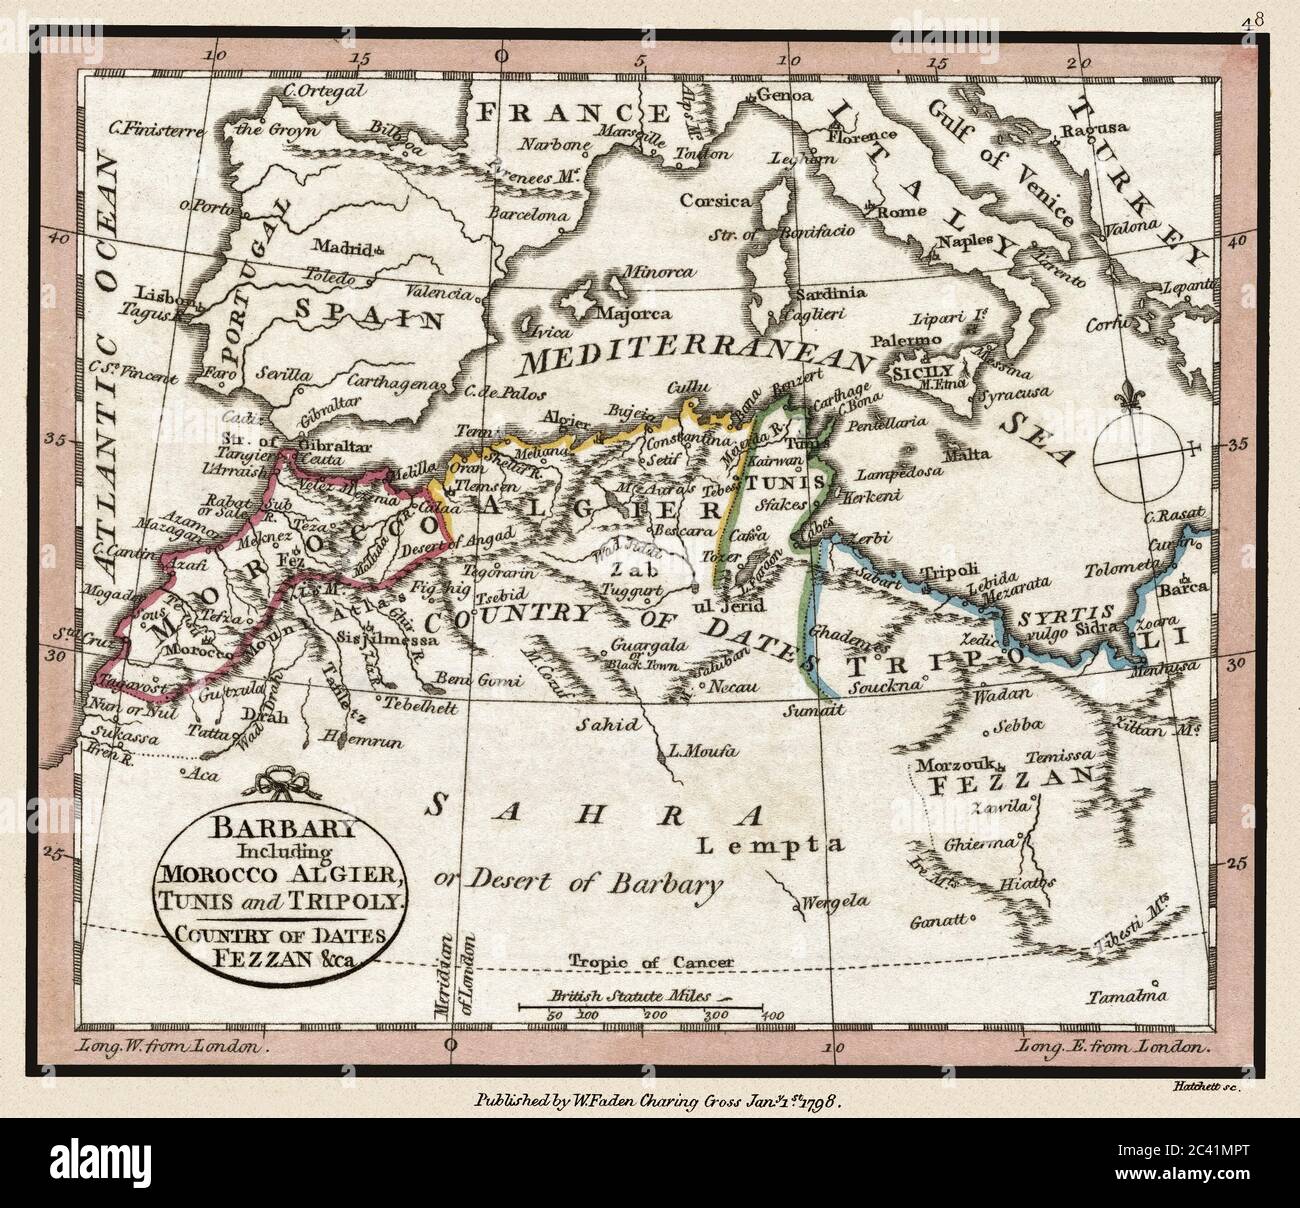 'Barbary, y compris Maroc Algier, Tunis et Tripoly.' Il s'agit d'une reproduction de carte historique de l'atlas magnifiquement détaillée publiée vers 1804. Banque D'Images